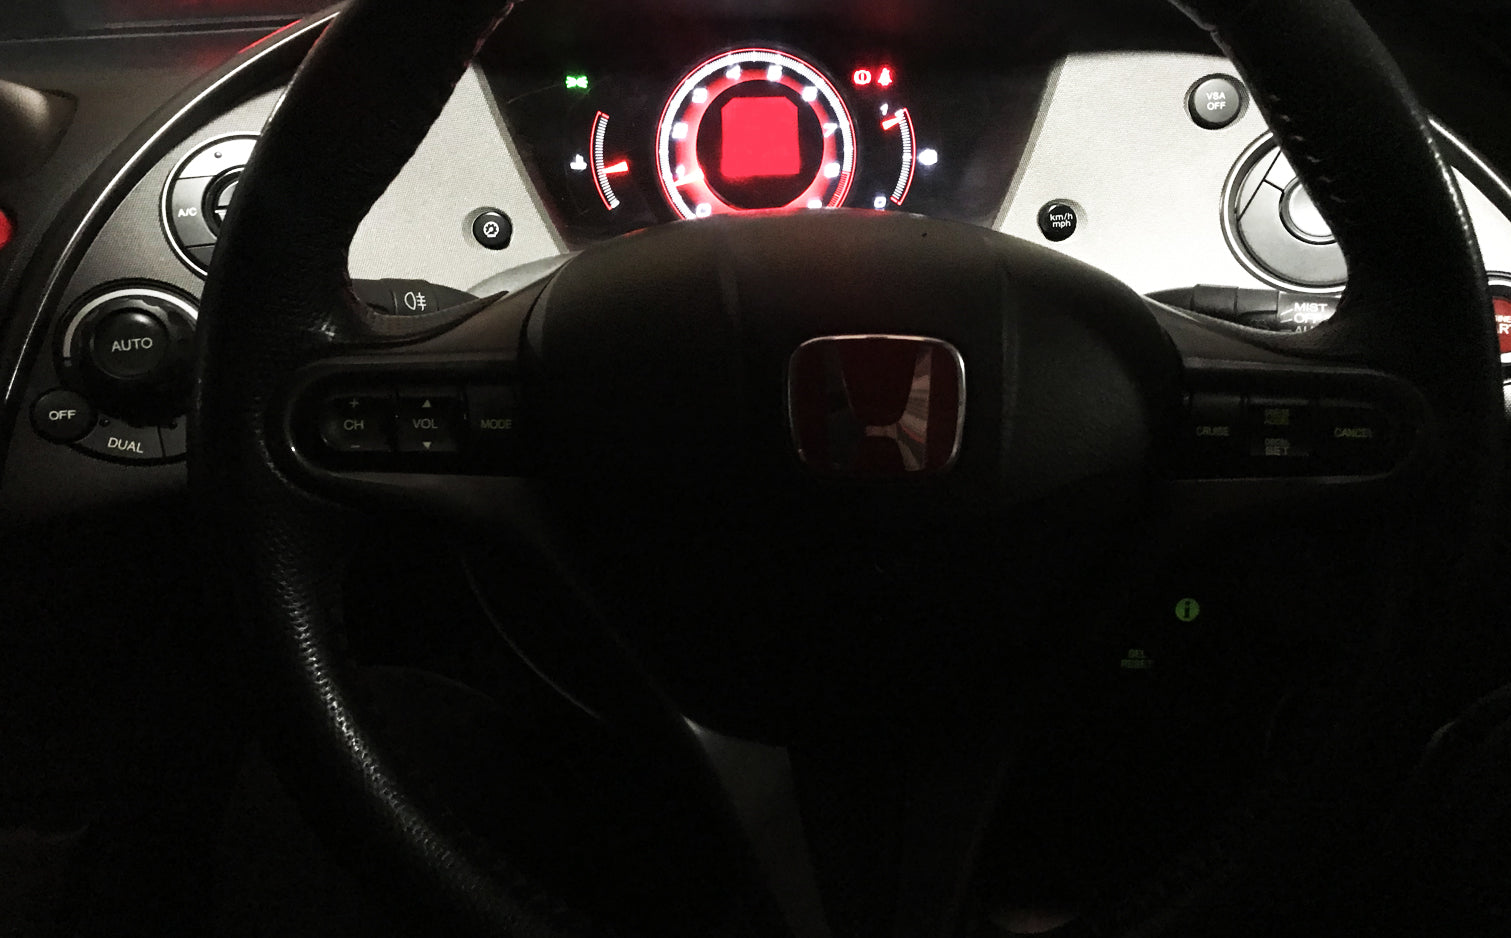 Honda Civic Type R FN2 - Speedometer